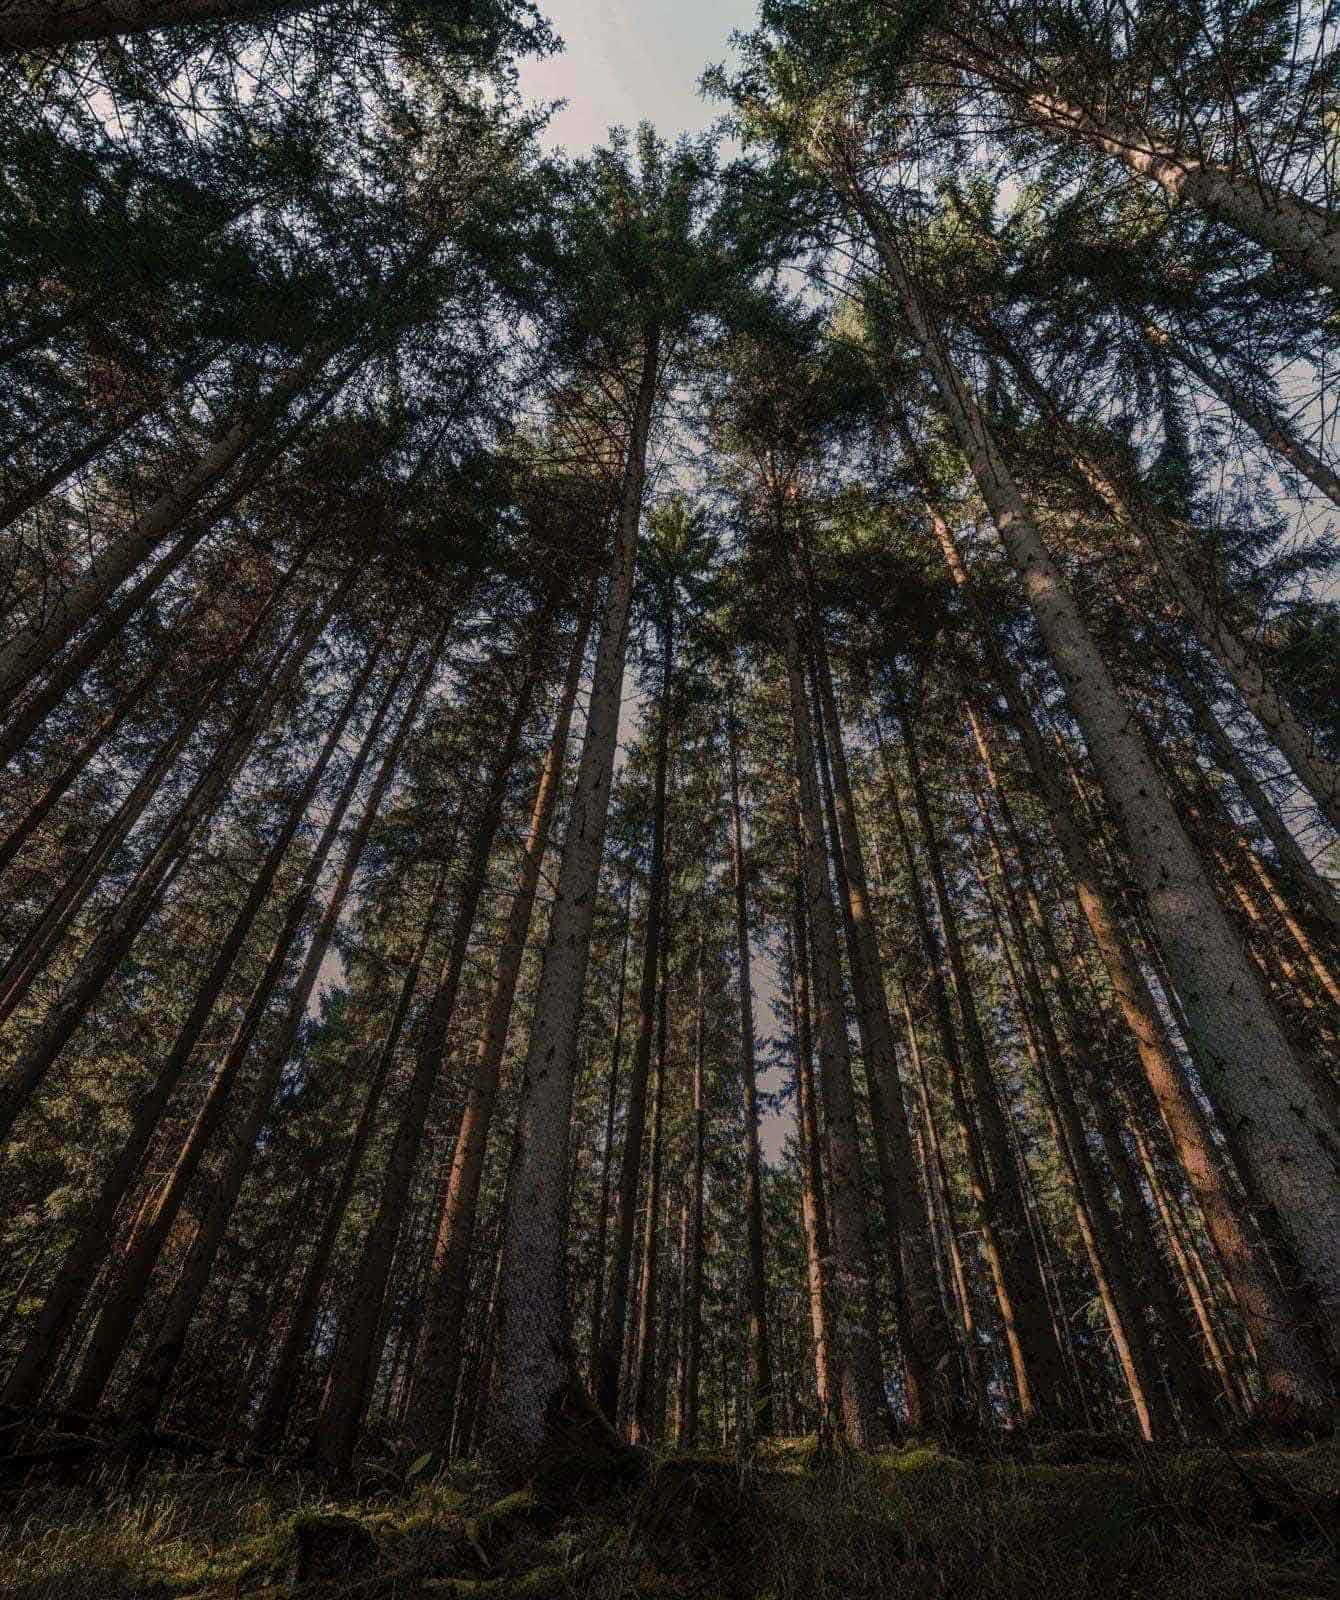 Vista sul bosco con alberi ad alto fusto